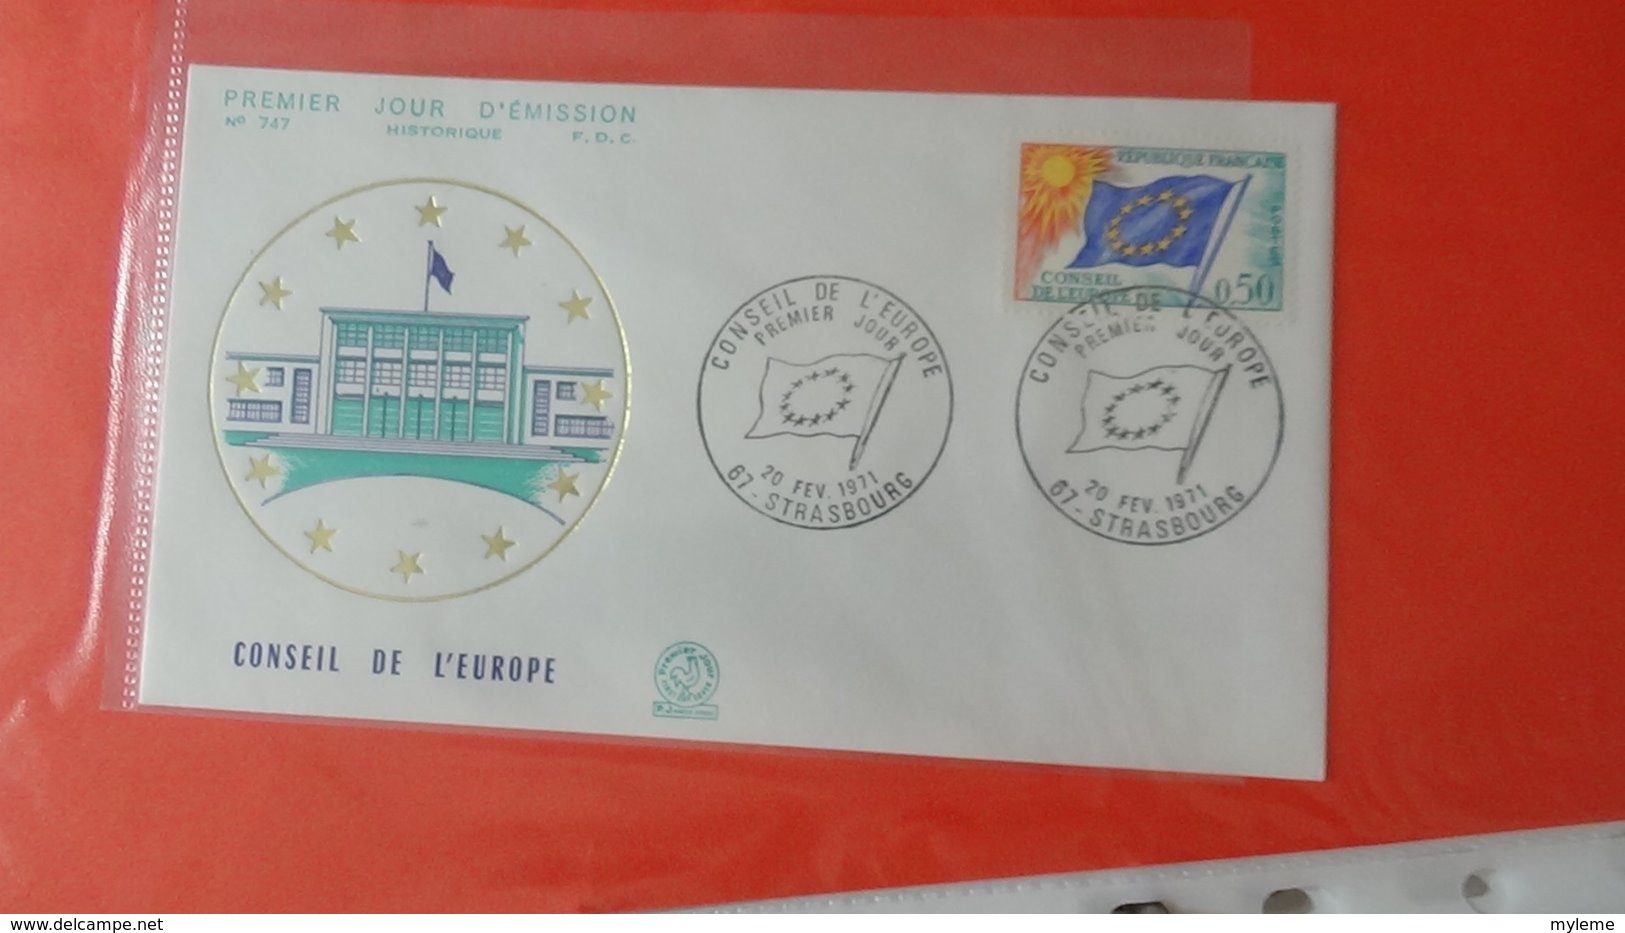 Dispersion d'une collection d'enveloppe 1er jour et autres dont 98 EUROPA de FRANCE entre 1956 et 1977